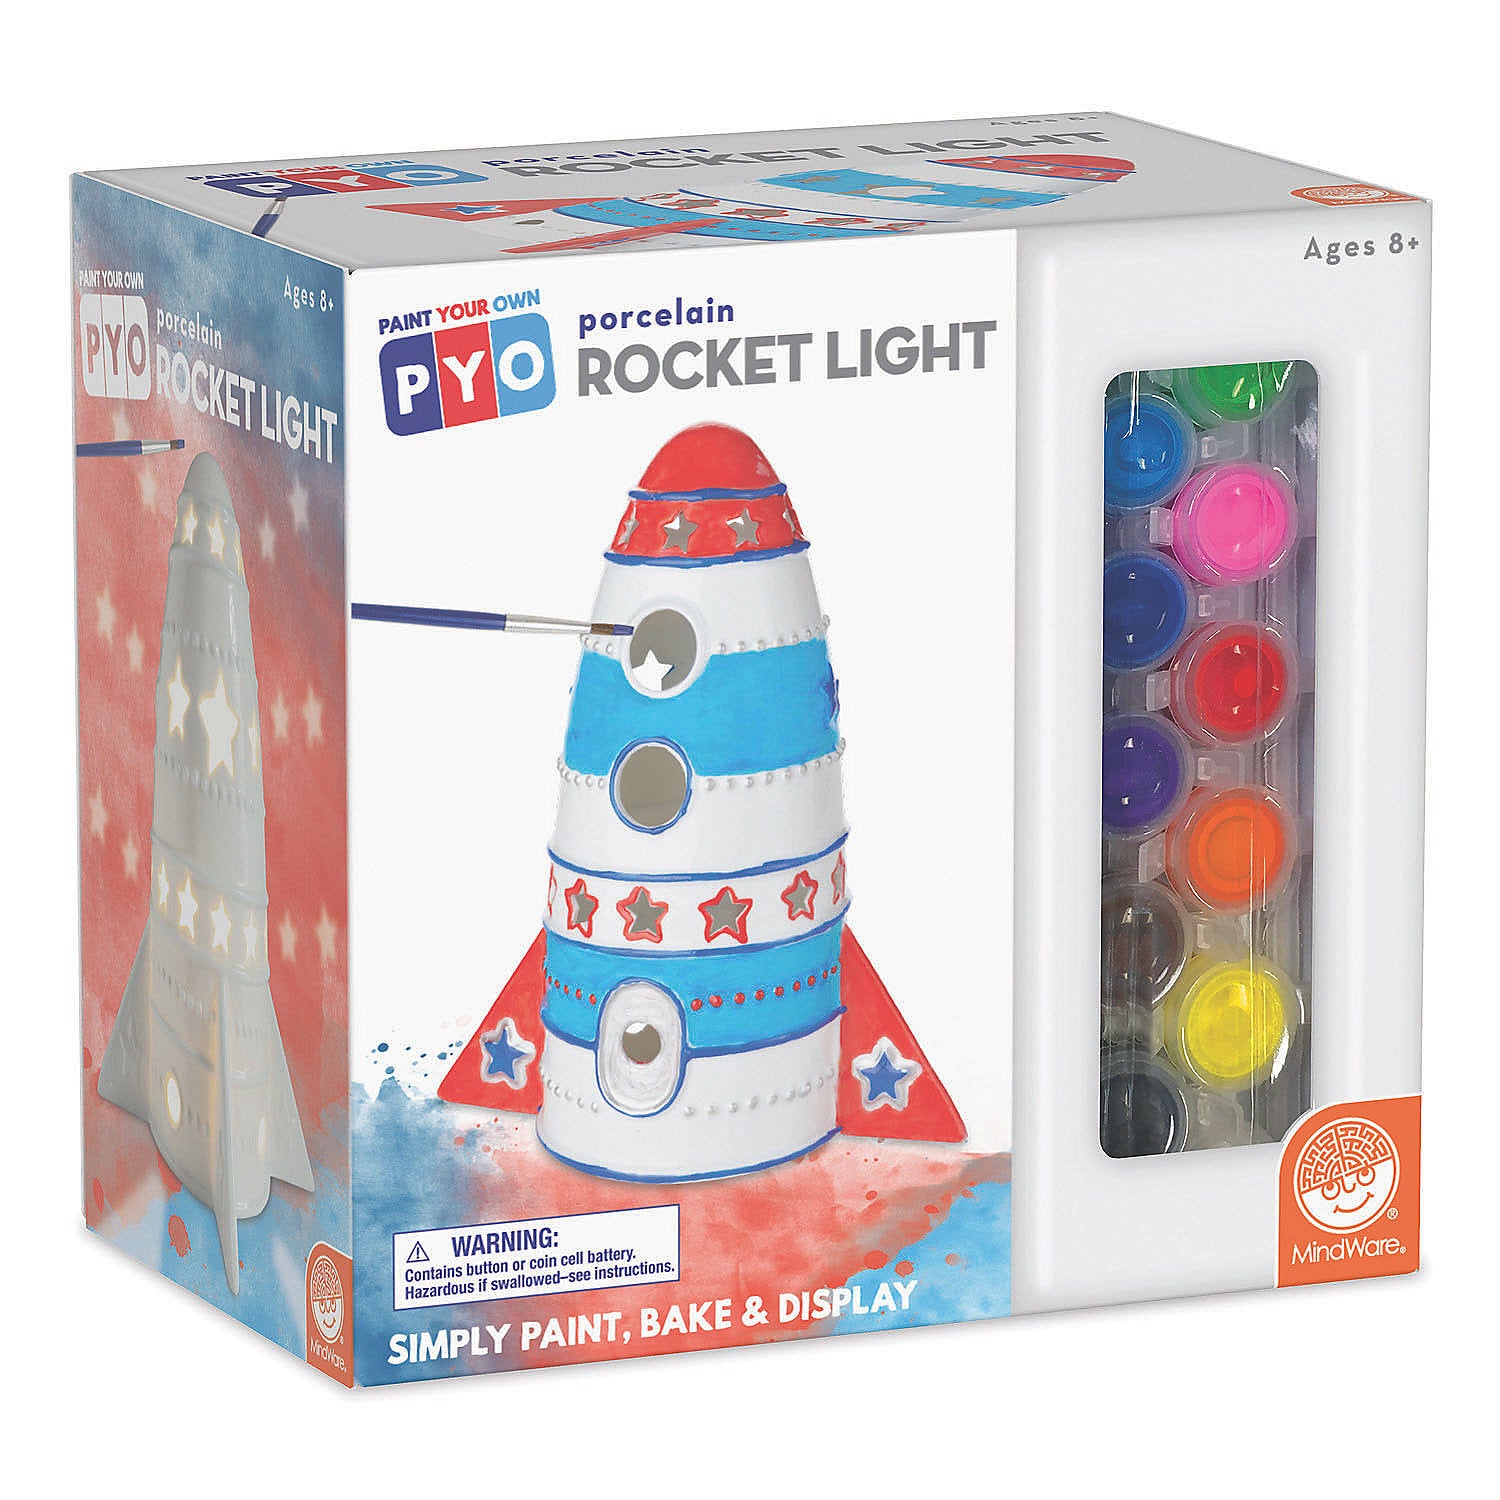 Paint Your Own Porcelain Light Rocket